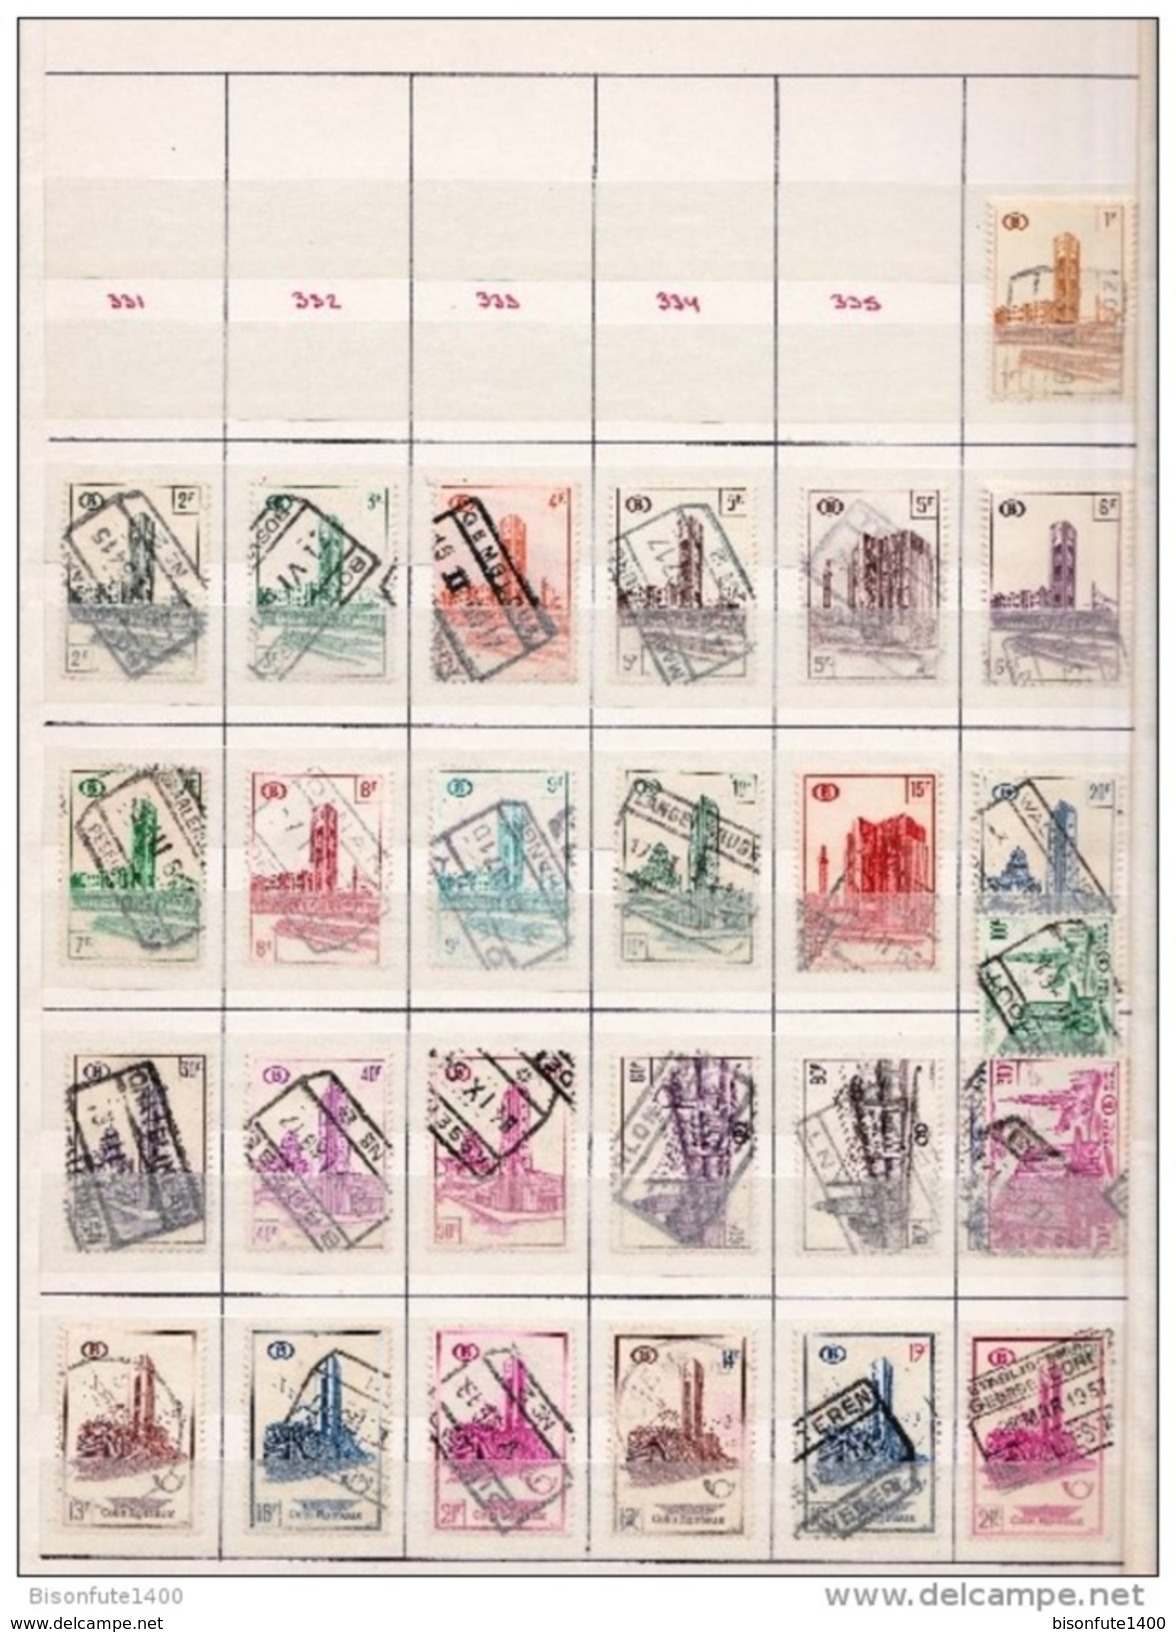 Belgique : Collection de timbres des Chemins de fer belge et colis postaux oblitérés avec album ( voir les photos )